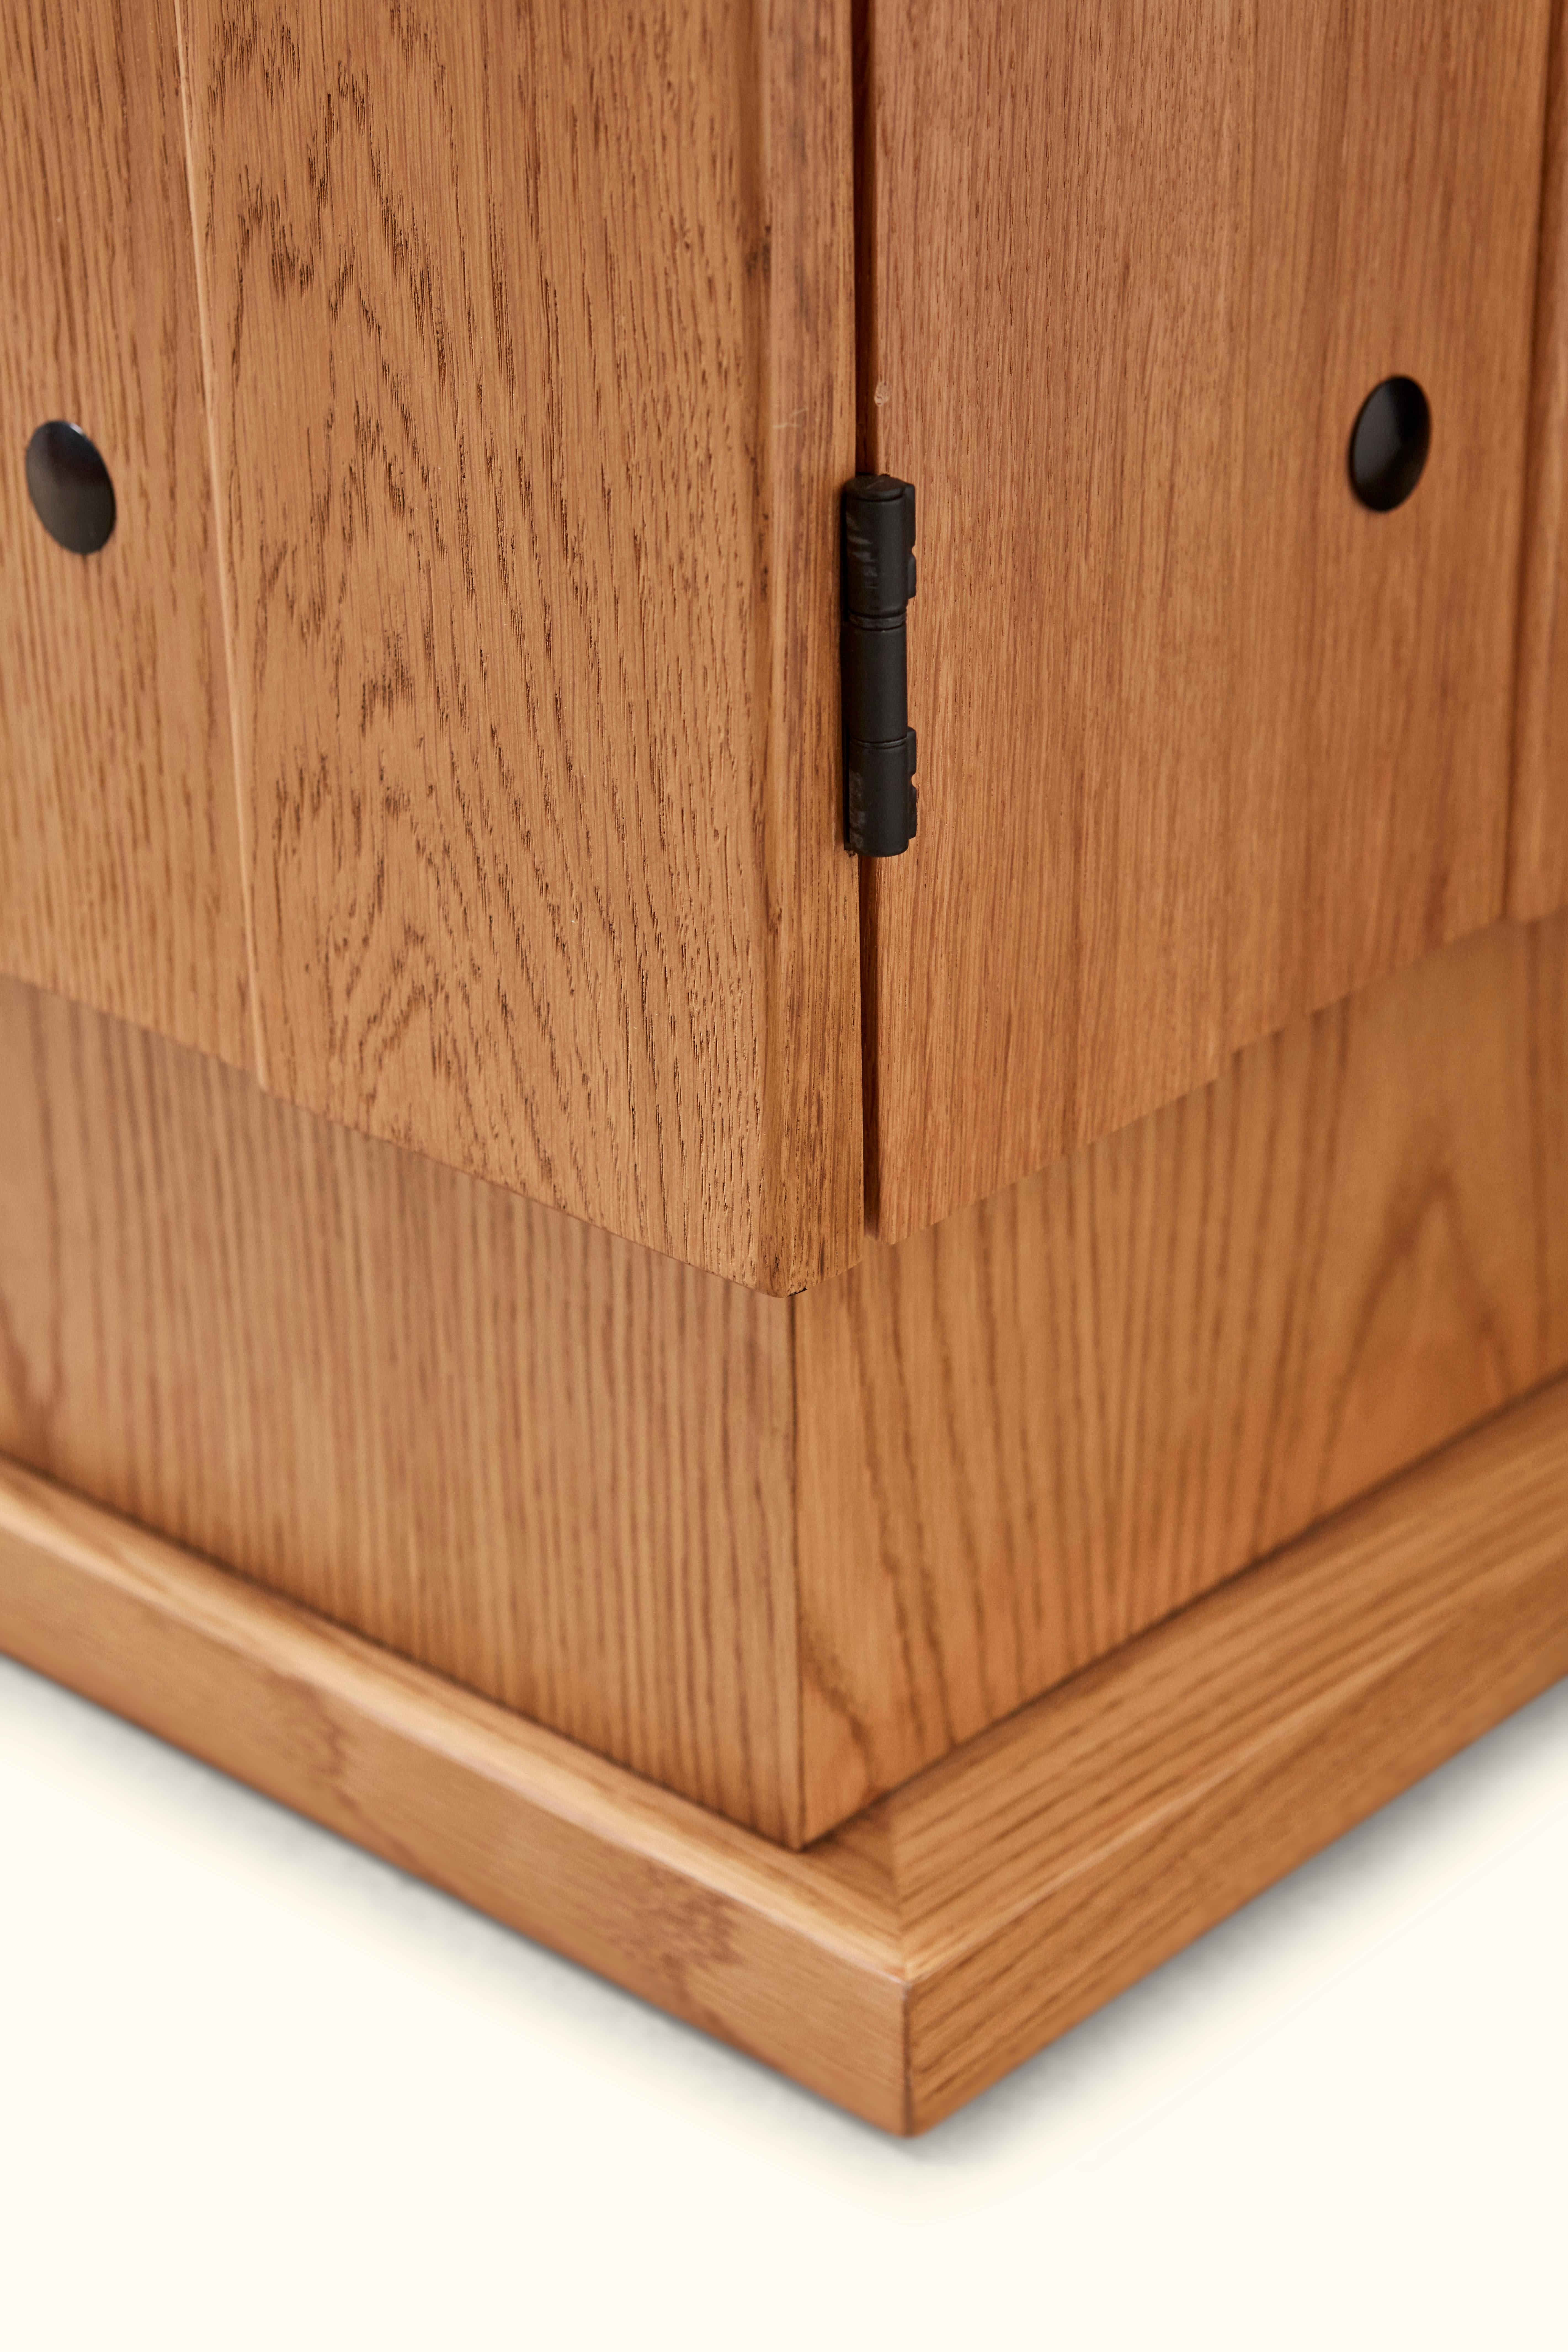 Oak Ojai Cabinet by Lawson-Fenning